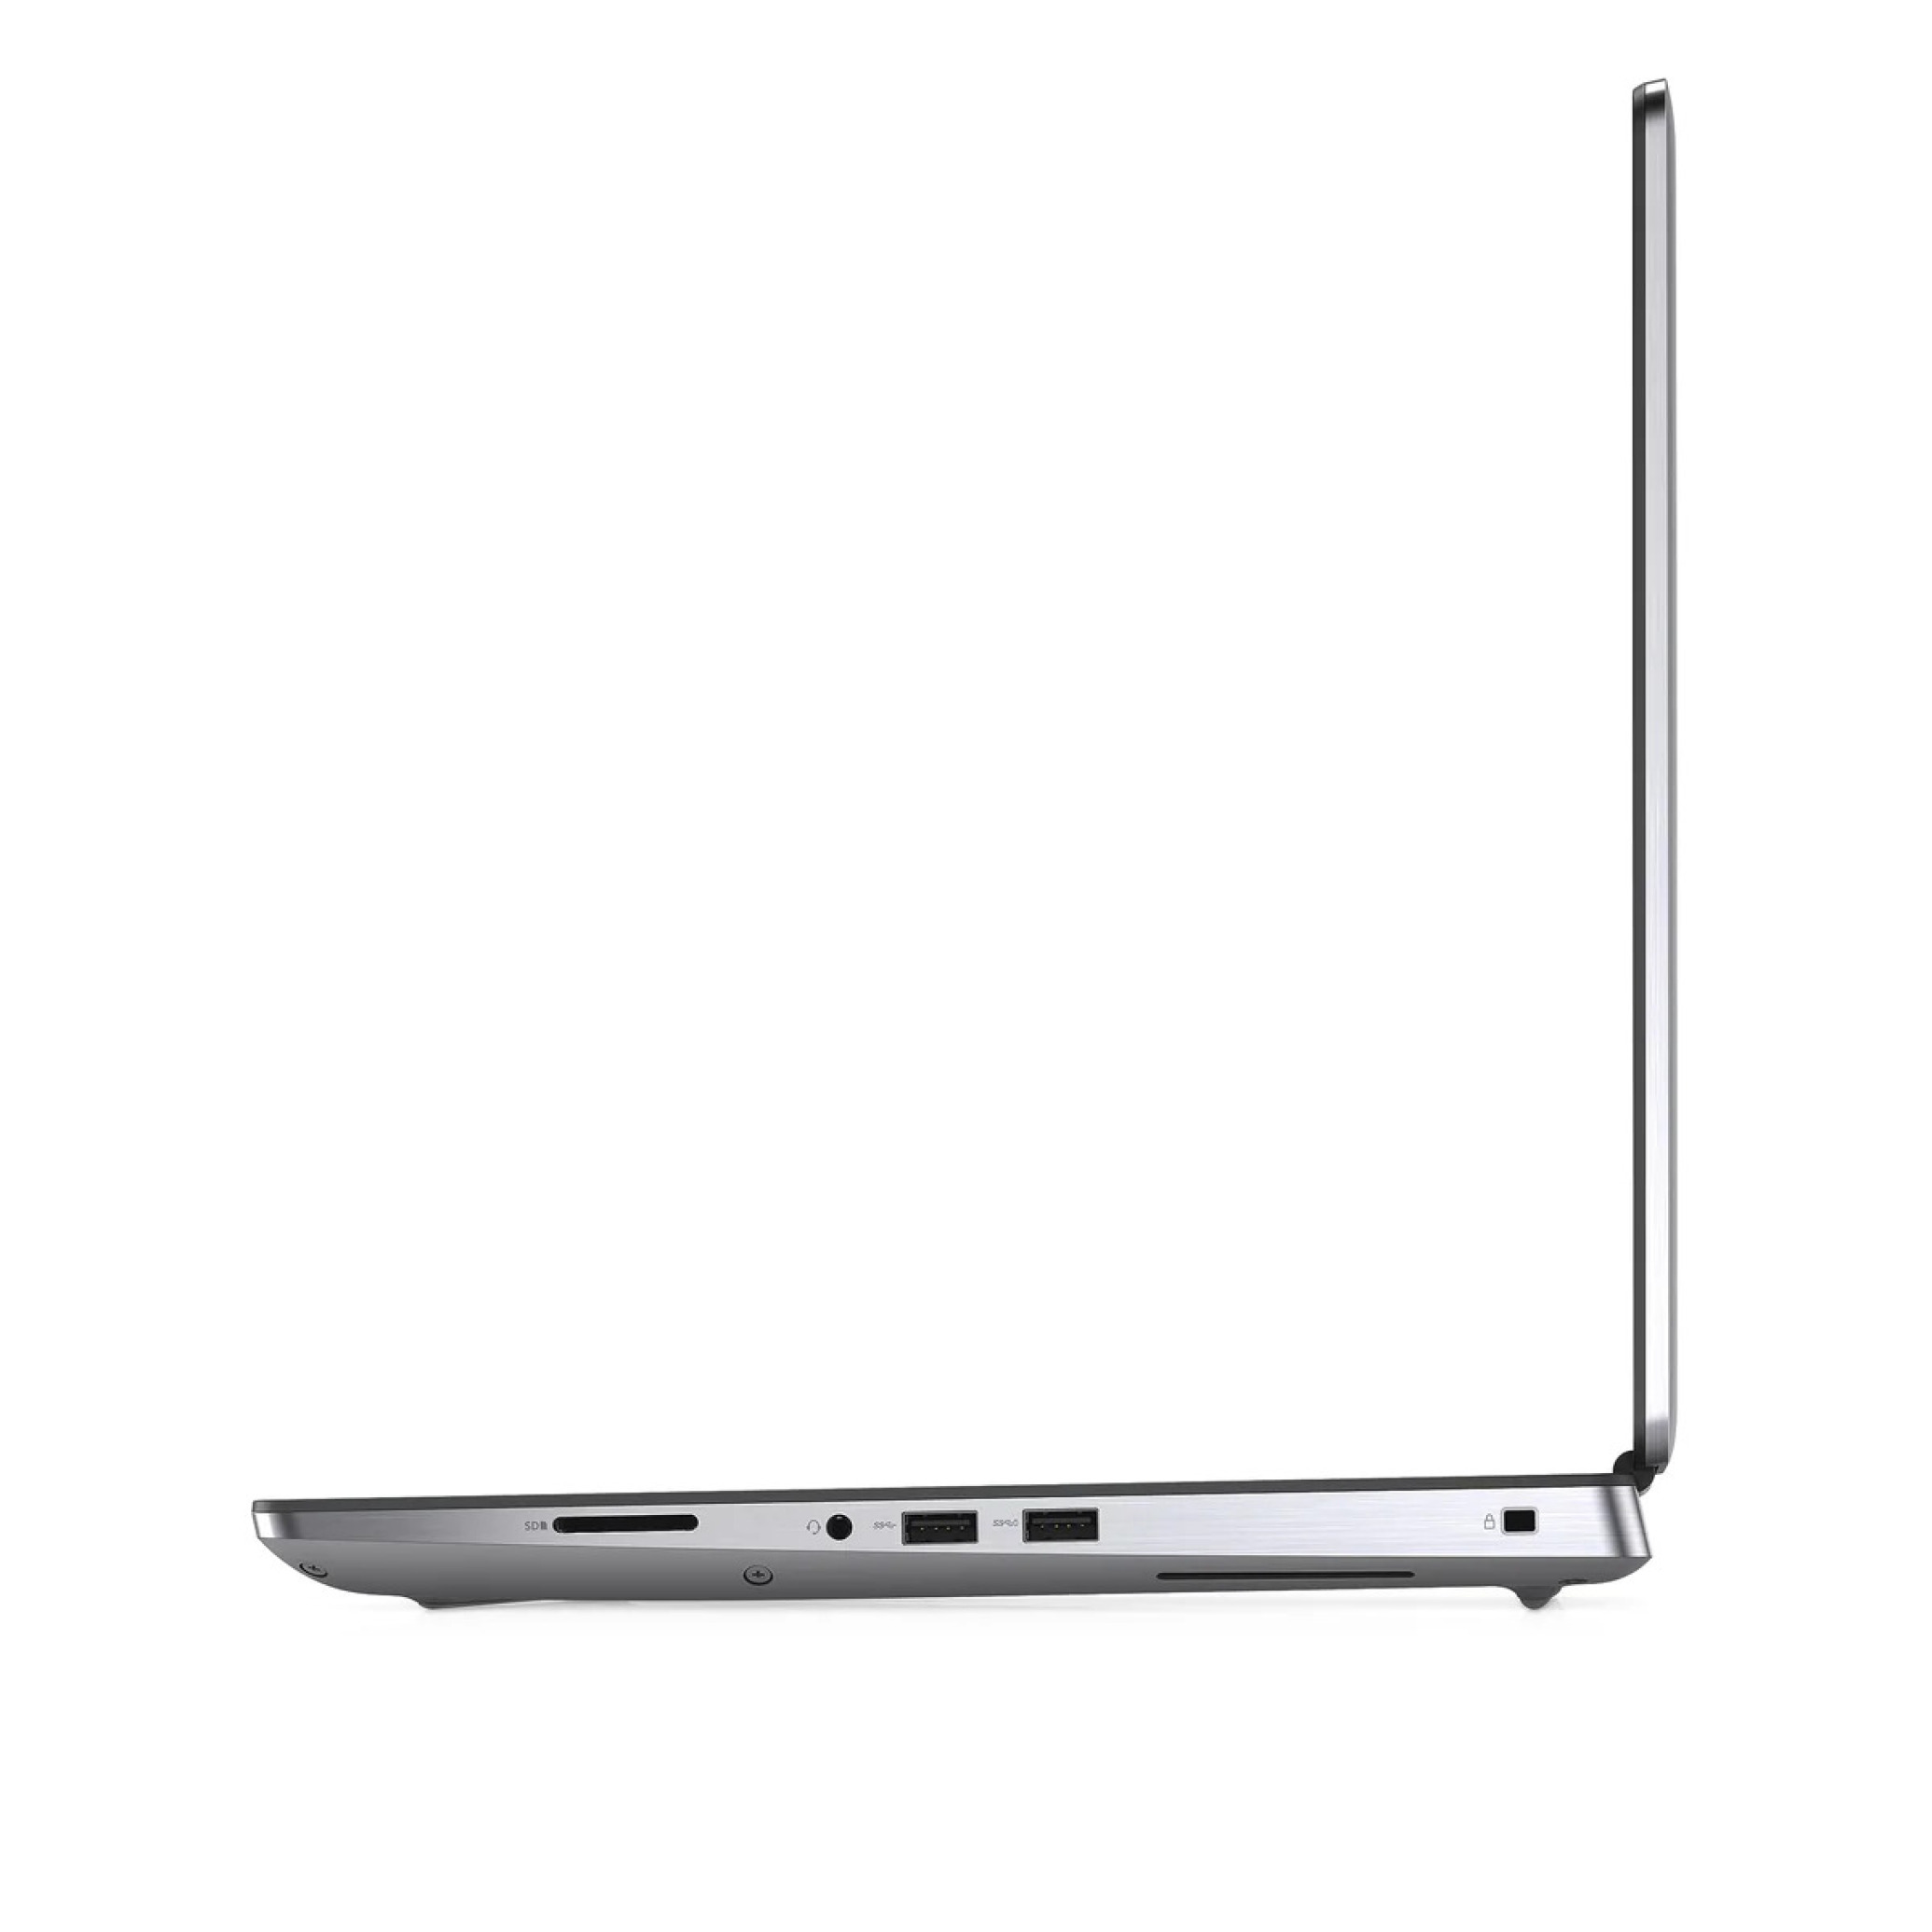  لپ تاپ دل پرسیژن 7550 پردازنده زئون Xeon W-10855M گرافیک 6 گیگابایت | لاکچری لپ تاپ 